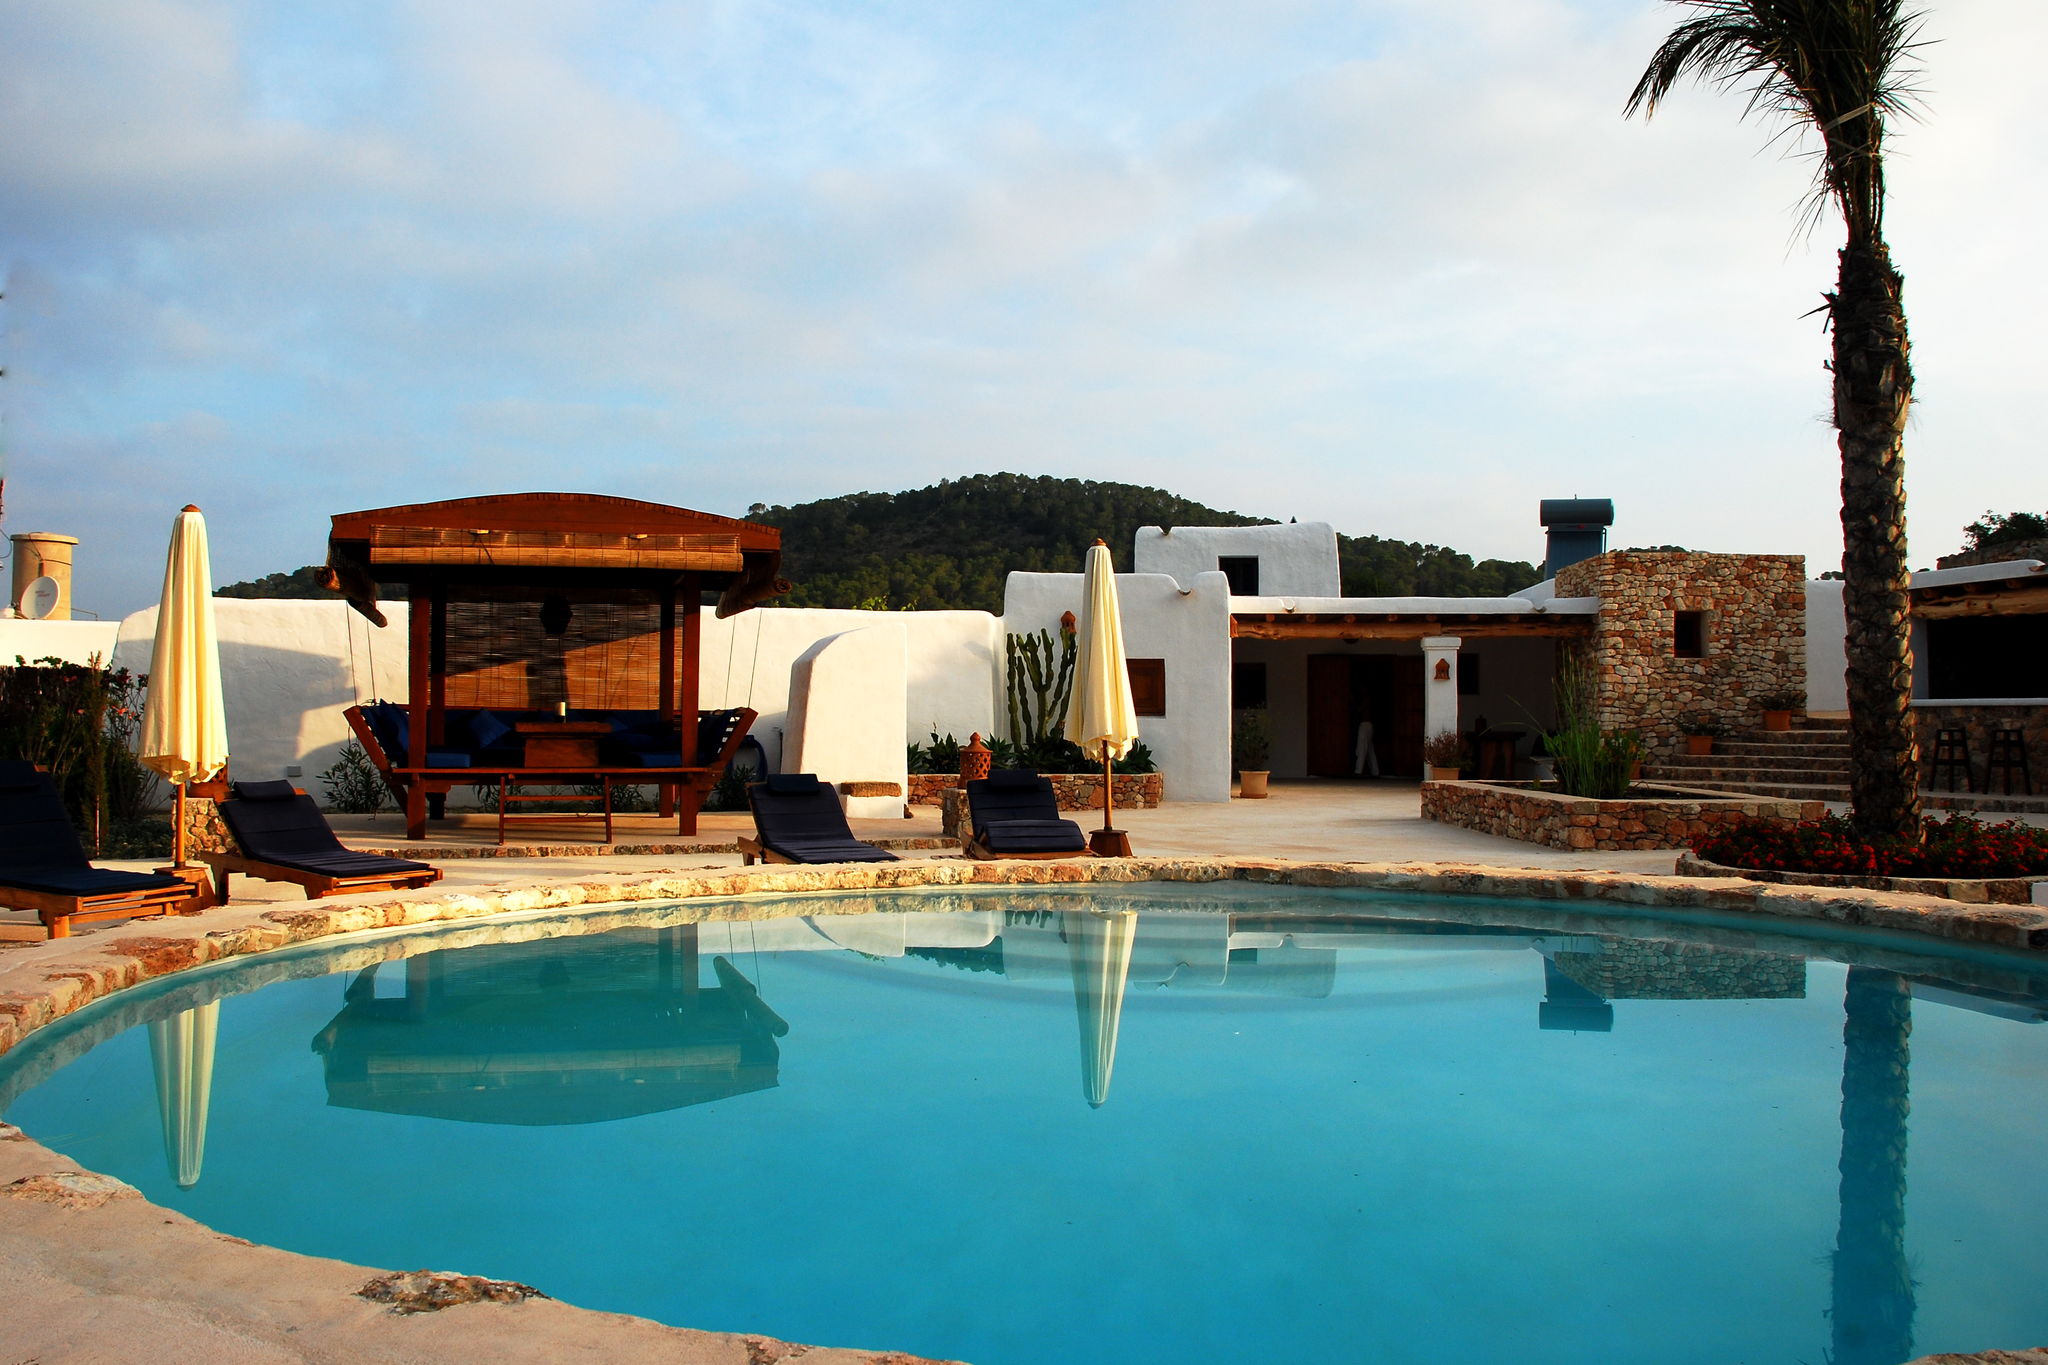 Bijzonder vakantiehuis in San José met tuin en zwembad